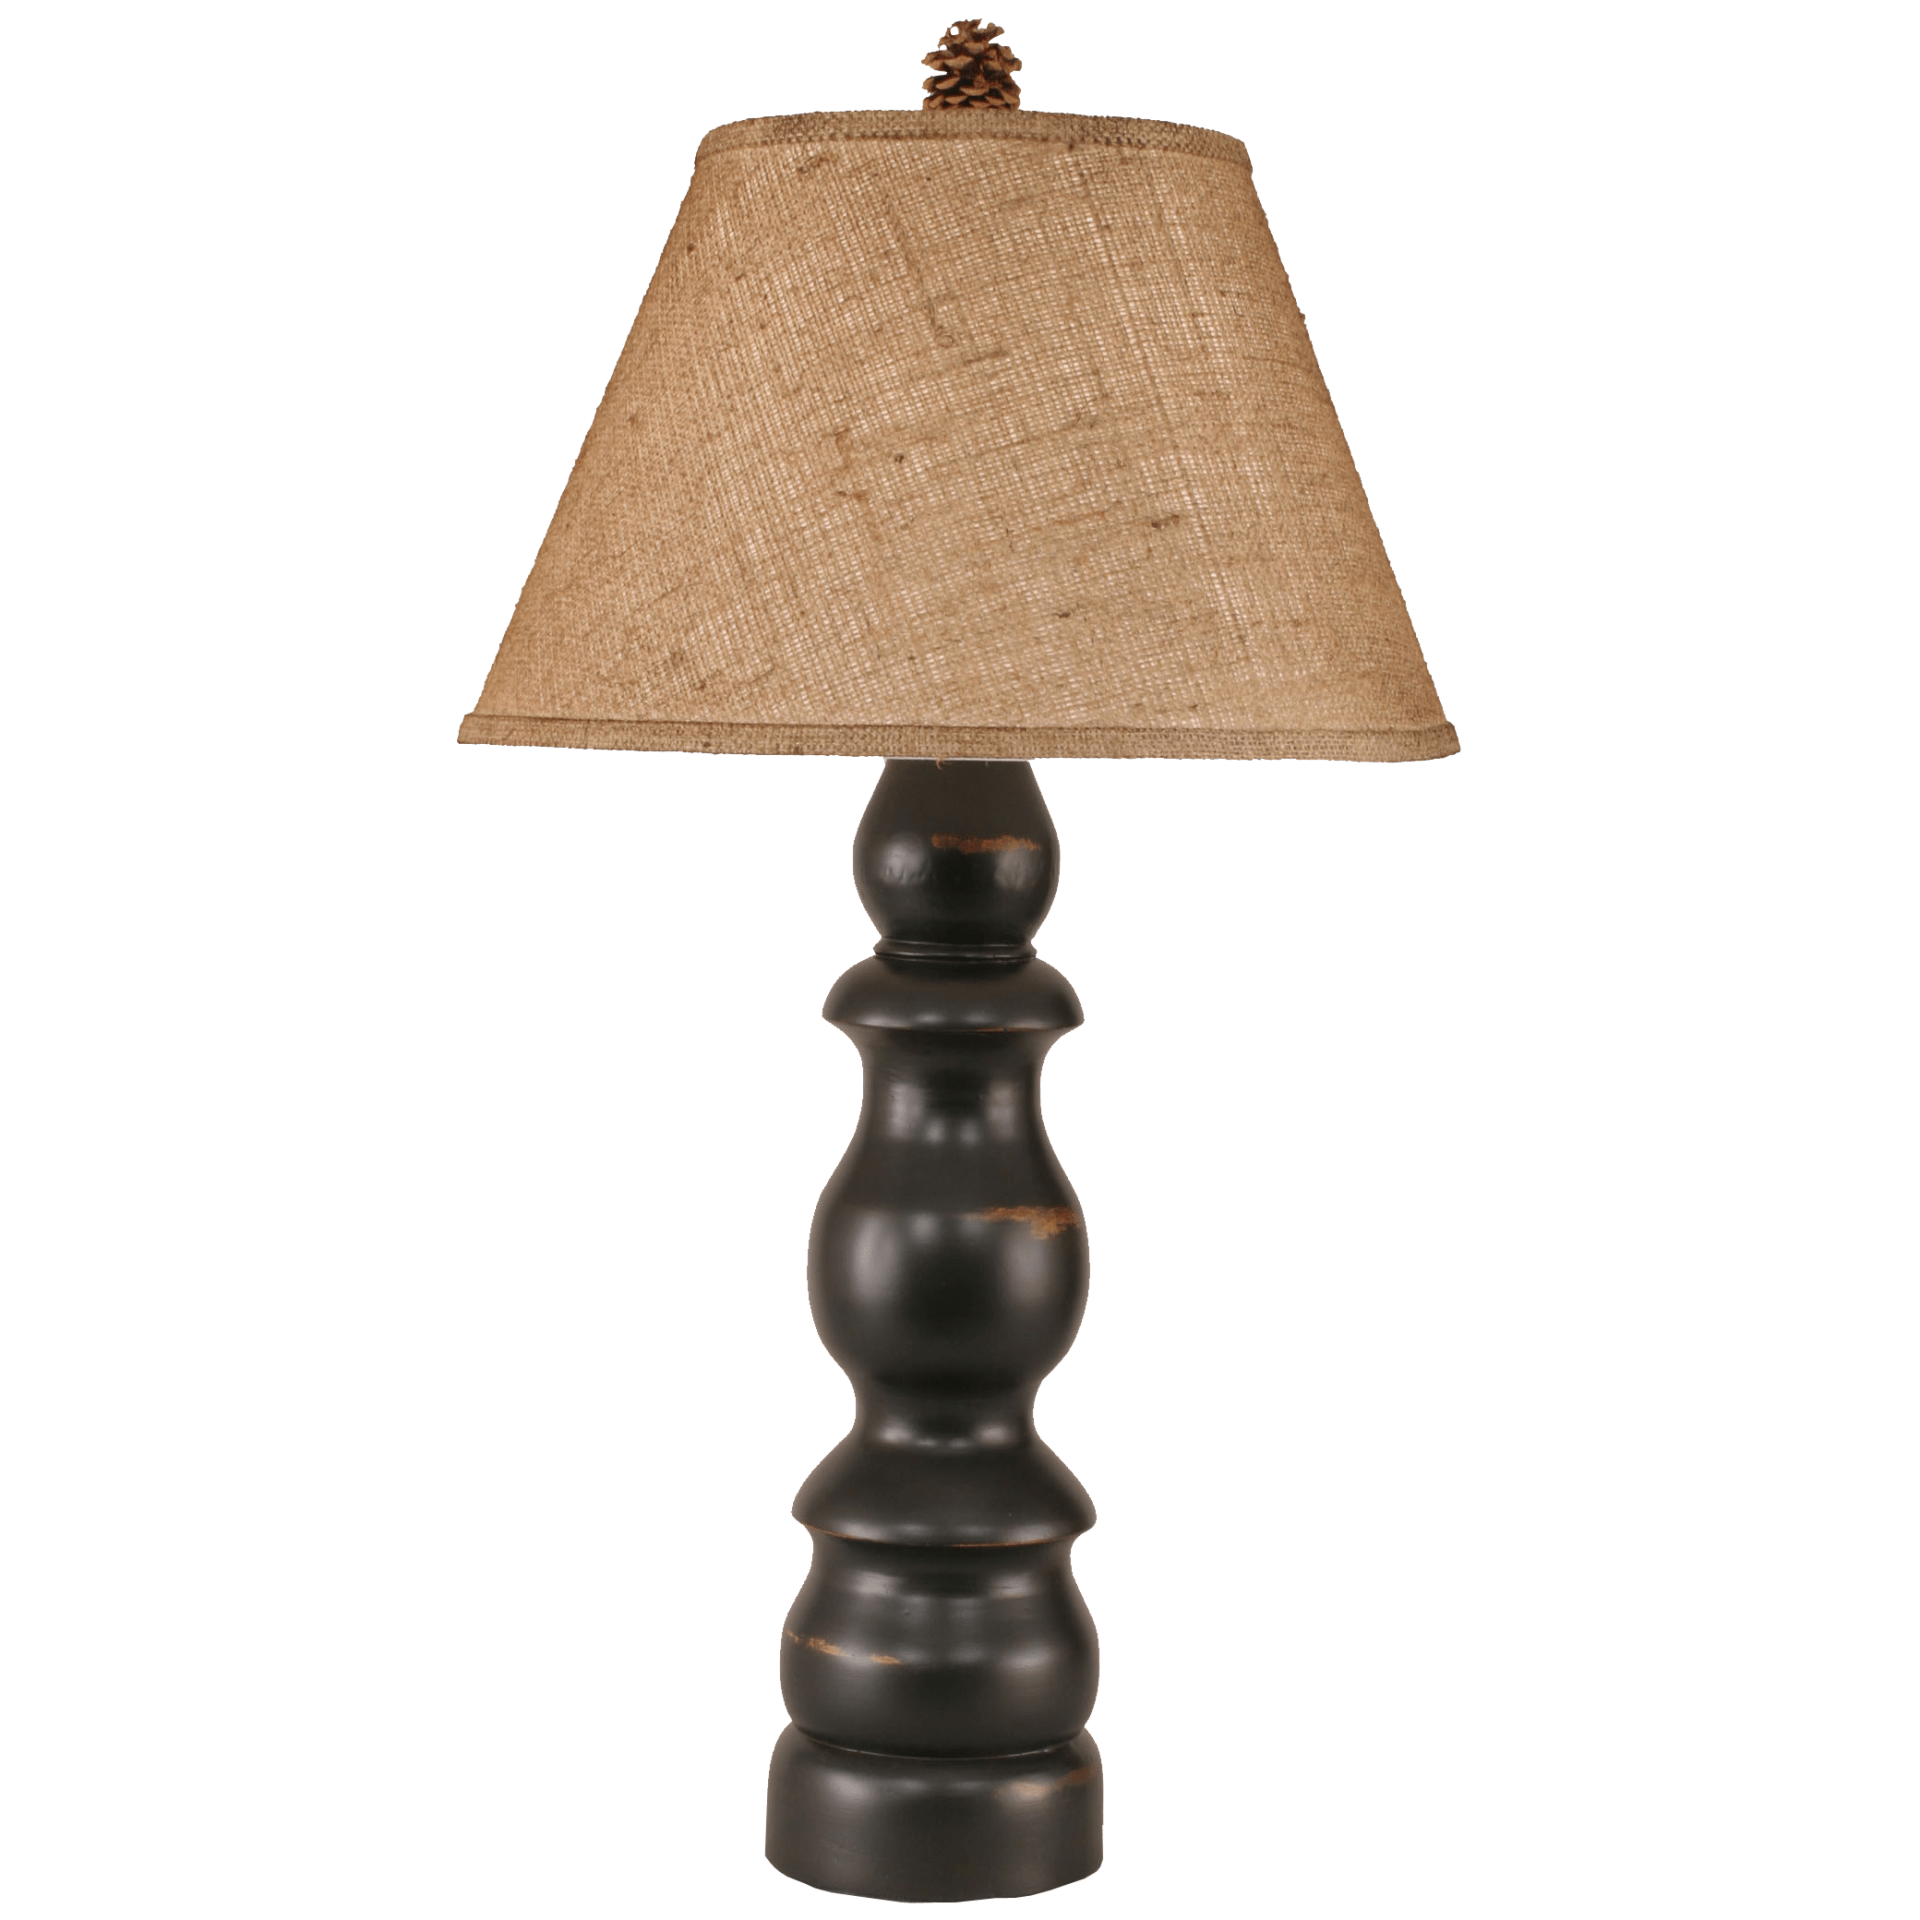 Farmhouse Table Lamp